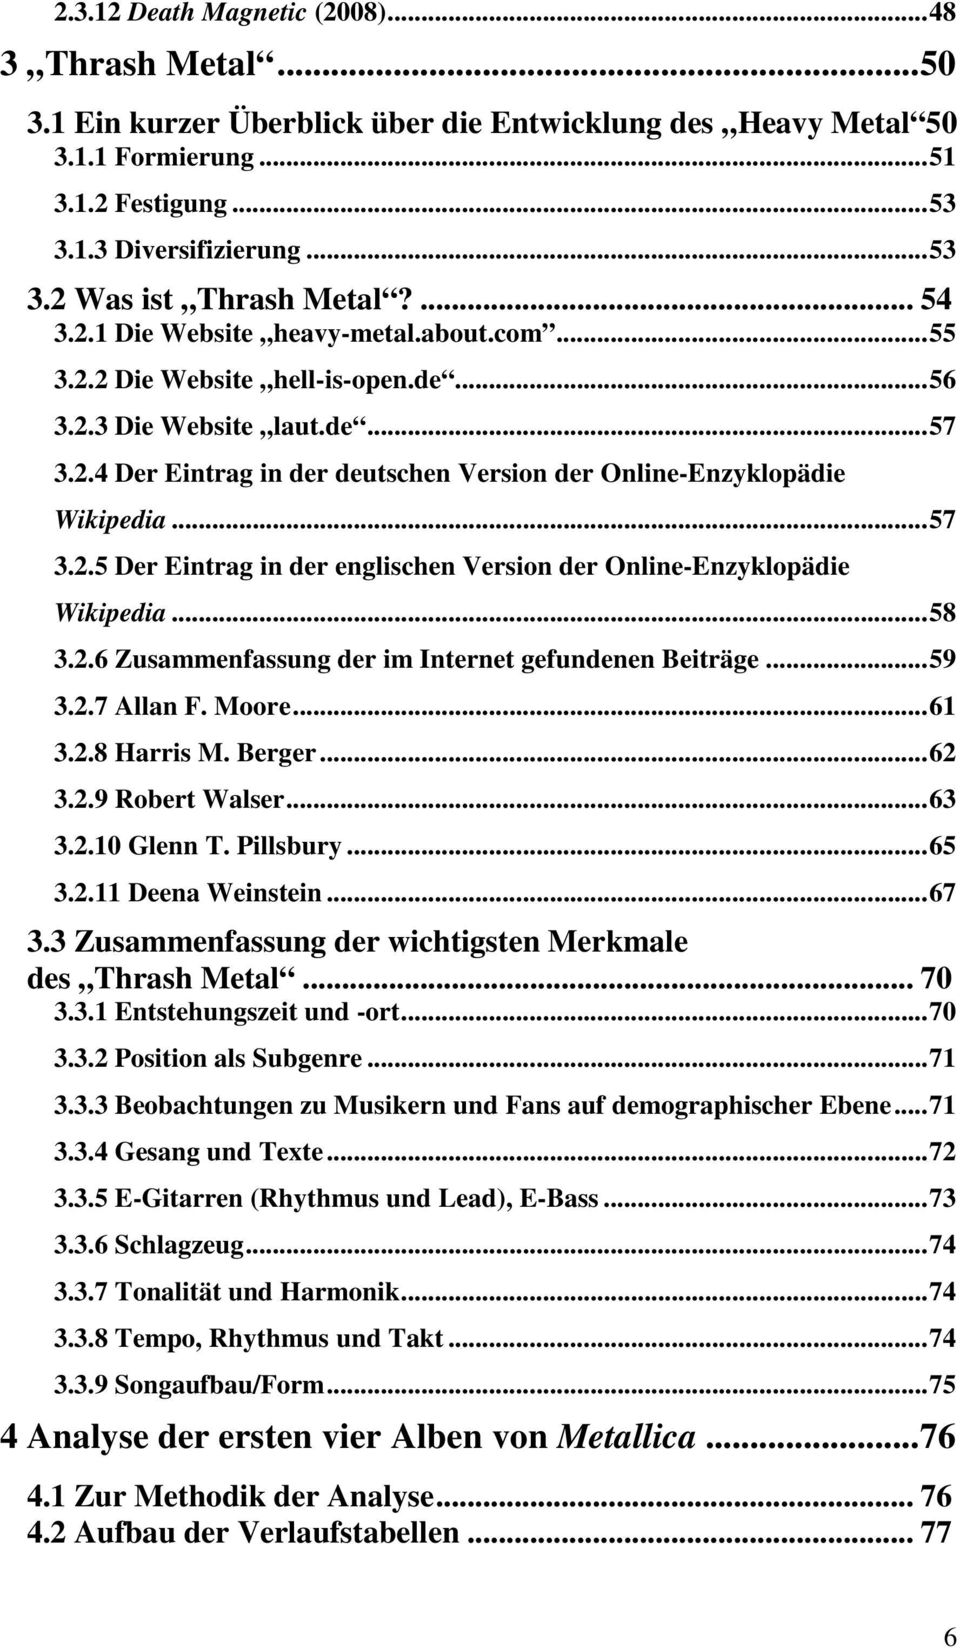 ..57 3.2.5 Der Eintrag in der englischen Version der Online-Enzyklopädie Wikipedia...58 3.2.6 Zusammenfassung der im Internet gefundenen Beiträge...59 3.2.7 Allan F. Moore...61 3.2.8 Harris M. Berger.